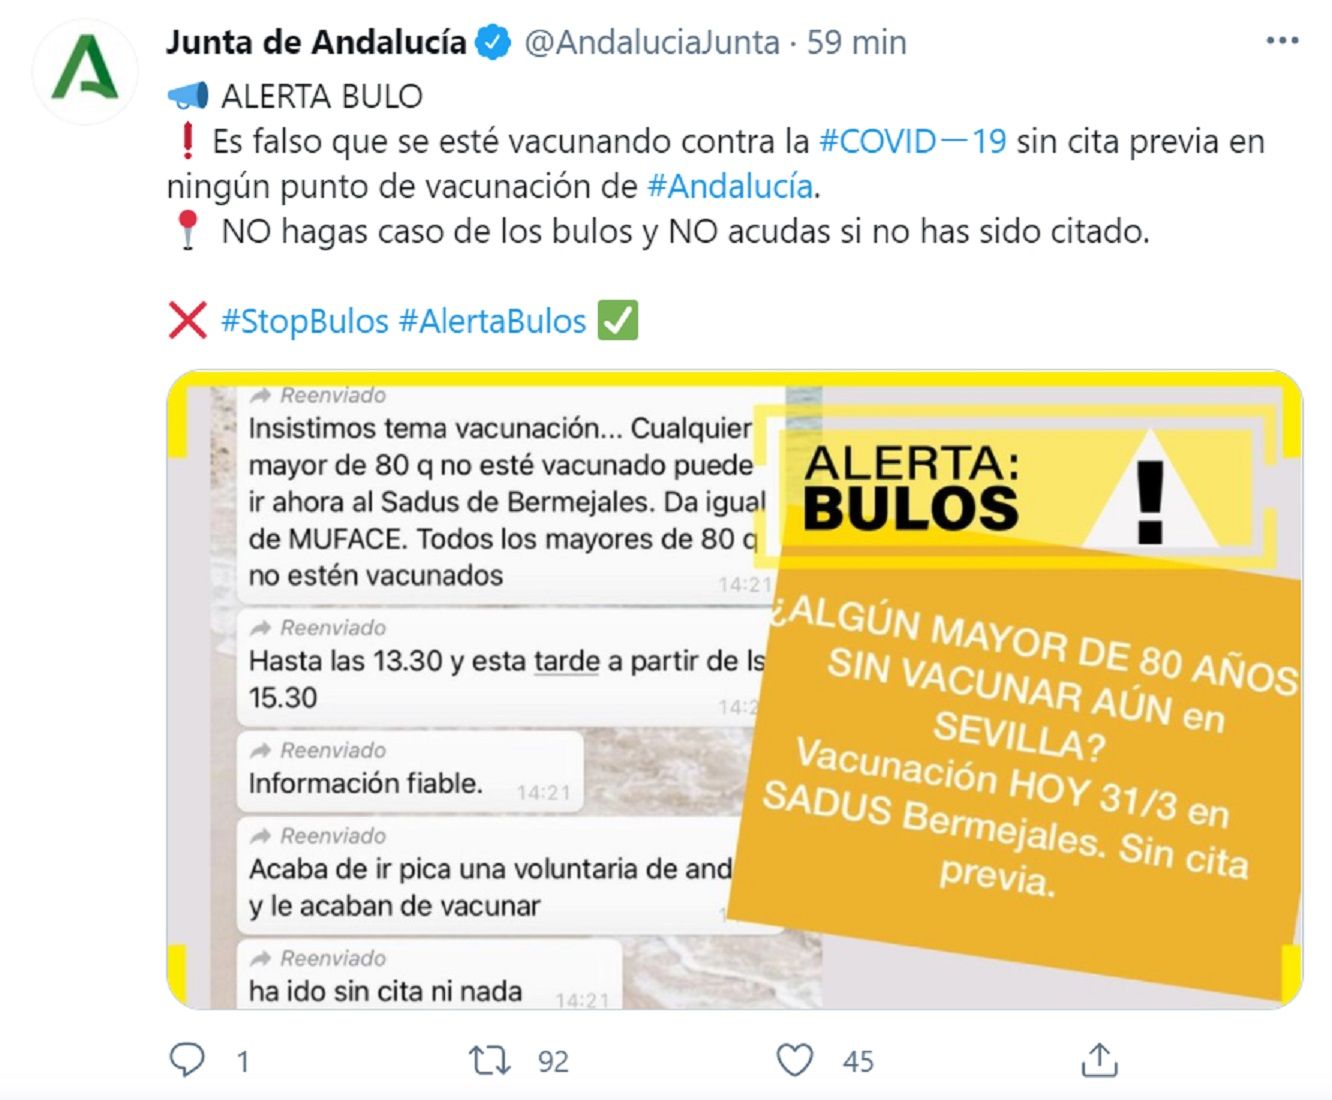 Junta de Andalucía bulo / RRSS